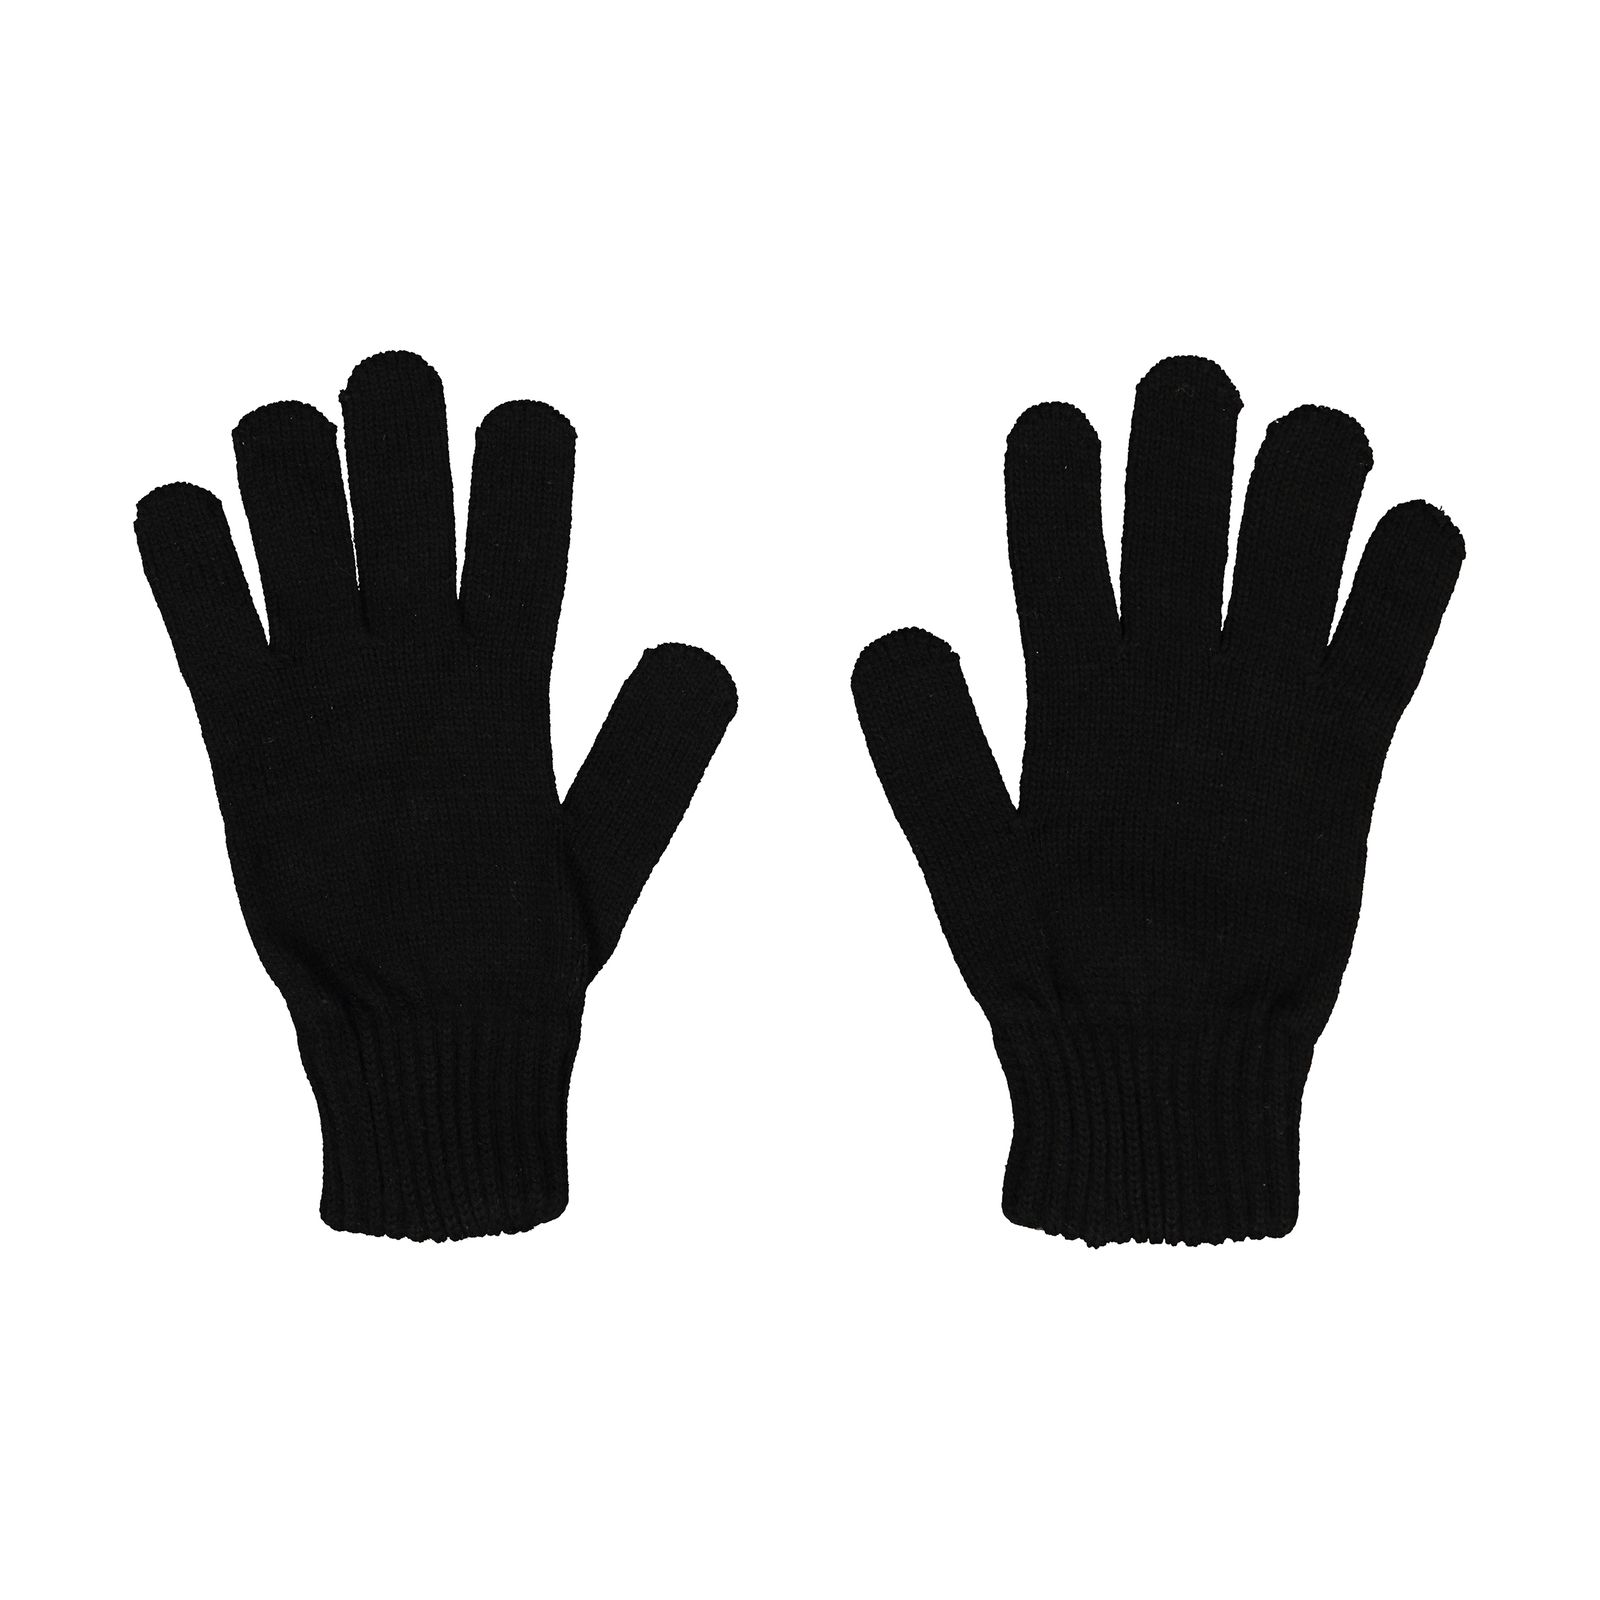 دستکش مردانه کینتیکس مدل 100223998 Black -  - 1